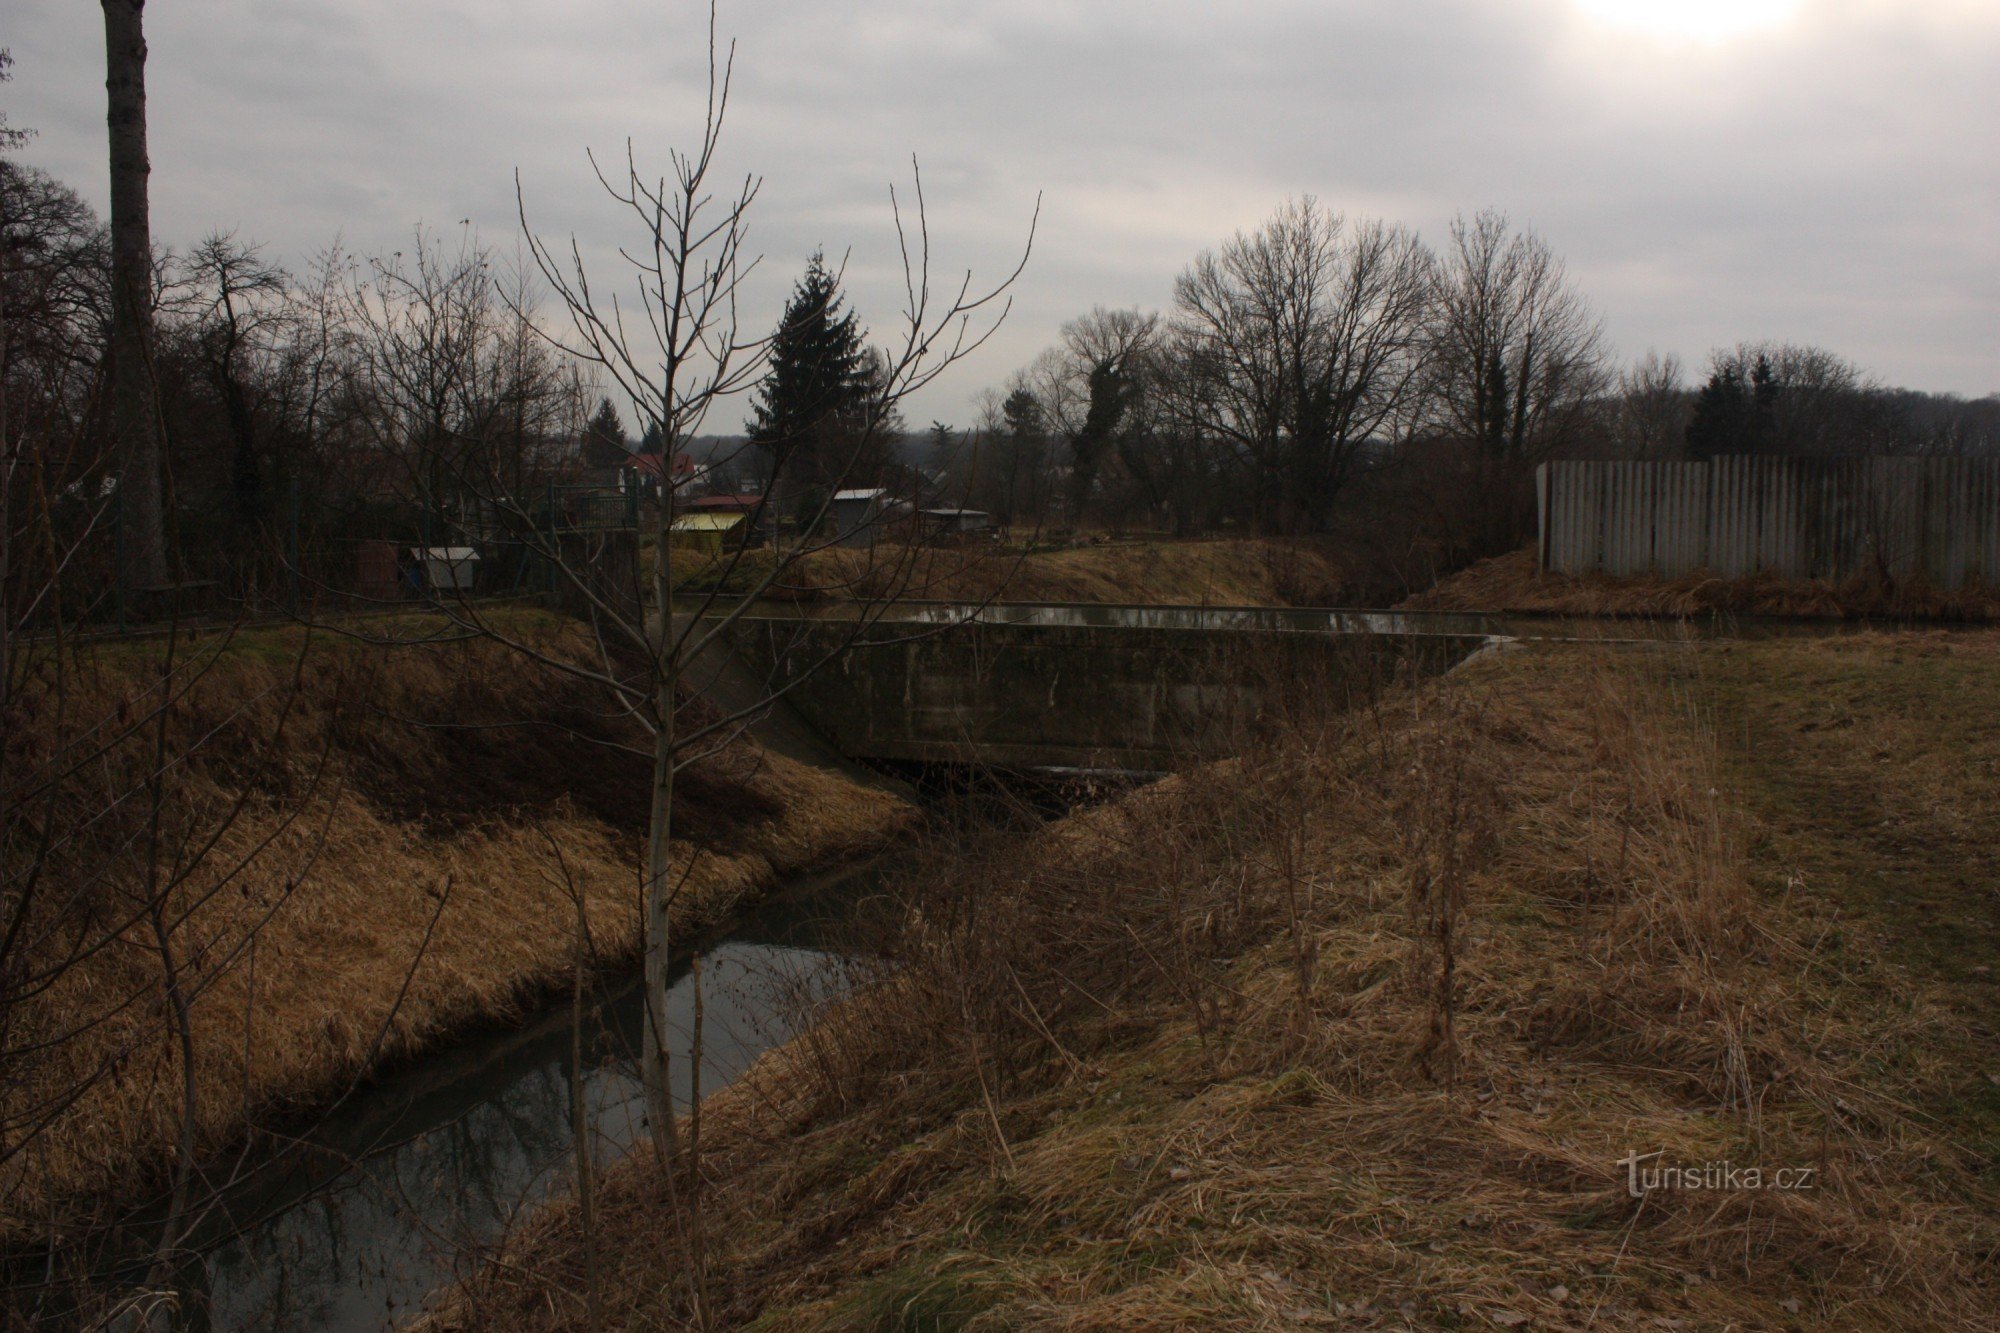 Off-level kruising van de Svodnice-stroom met een molenaandrijving